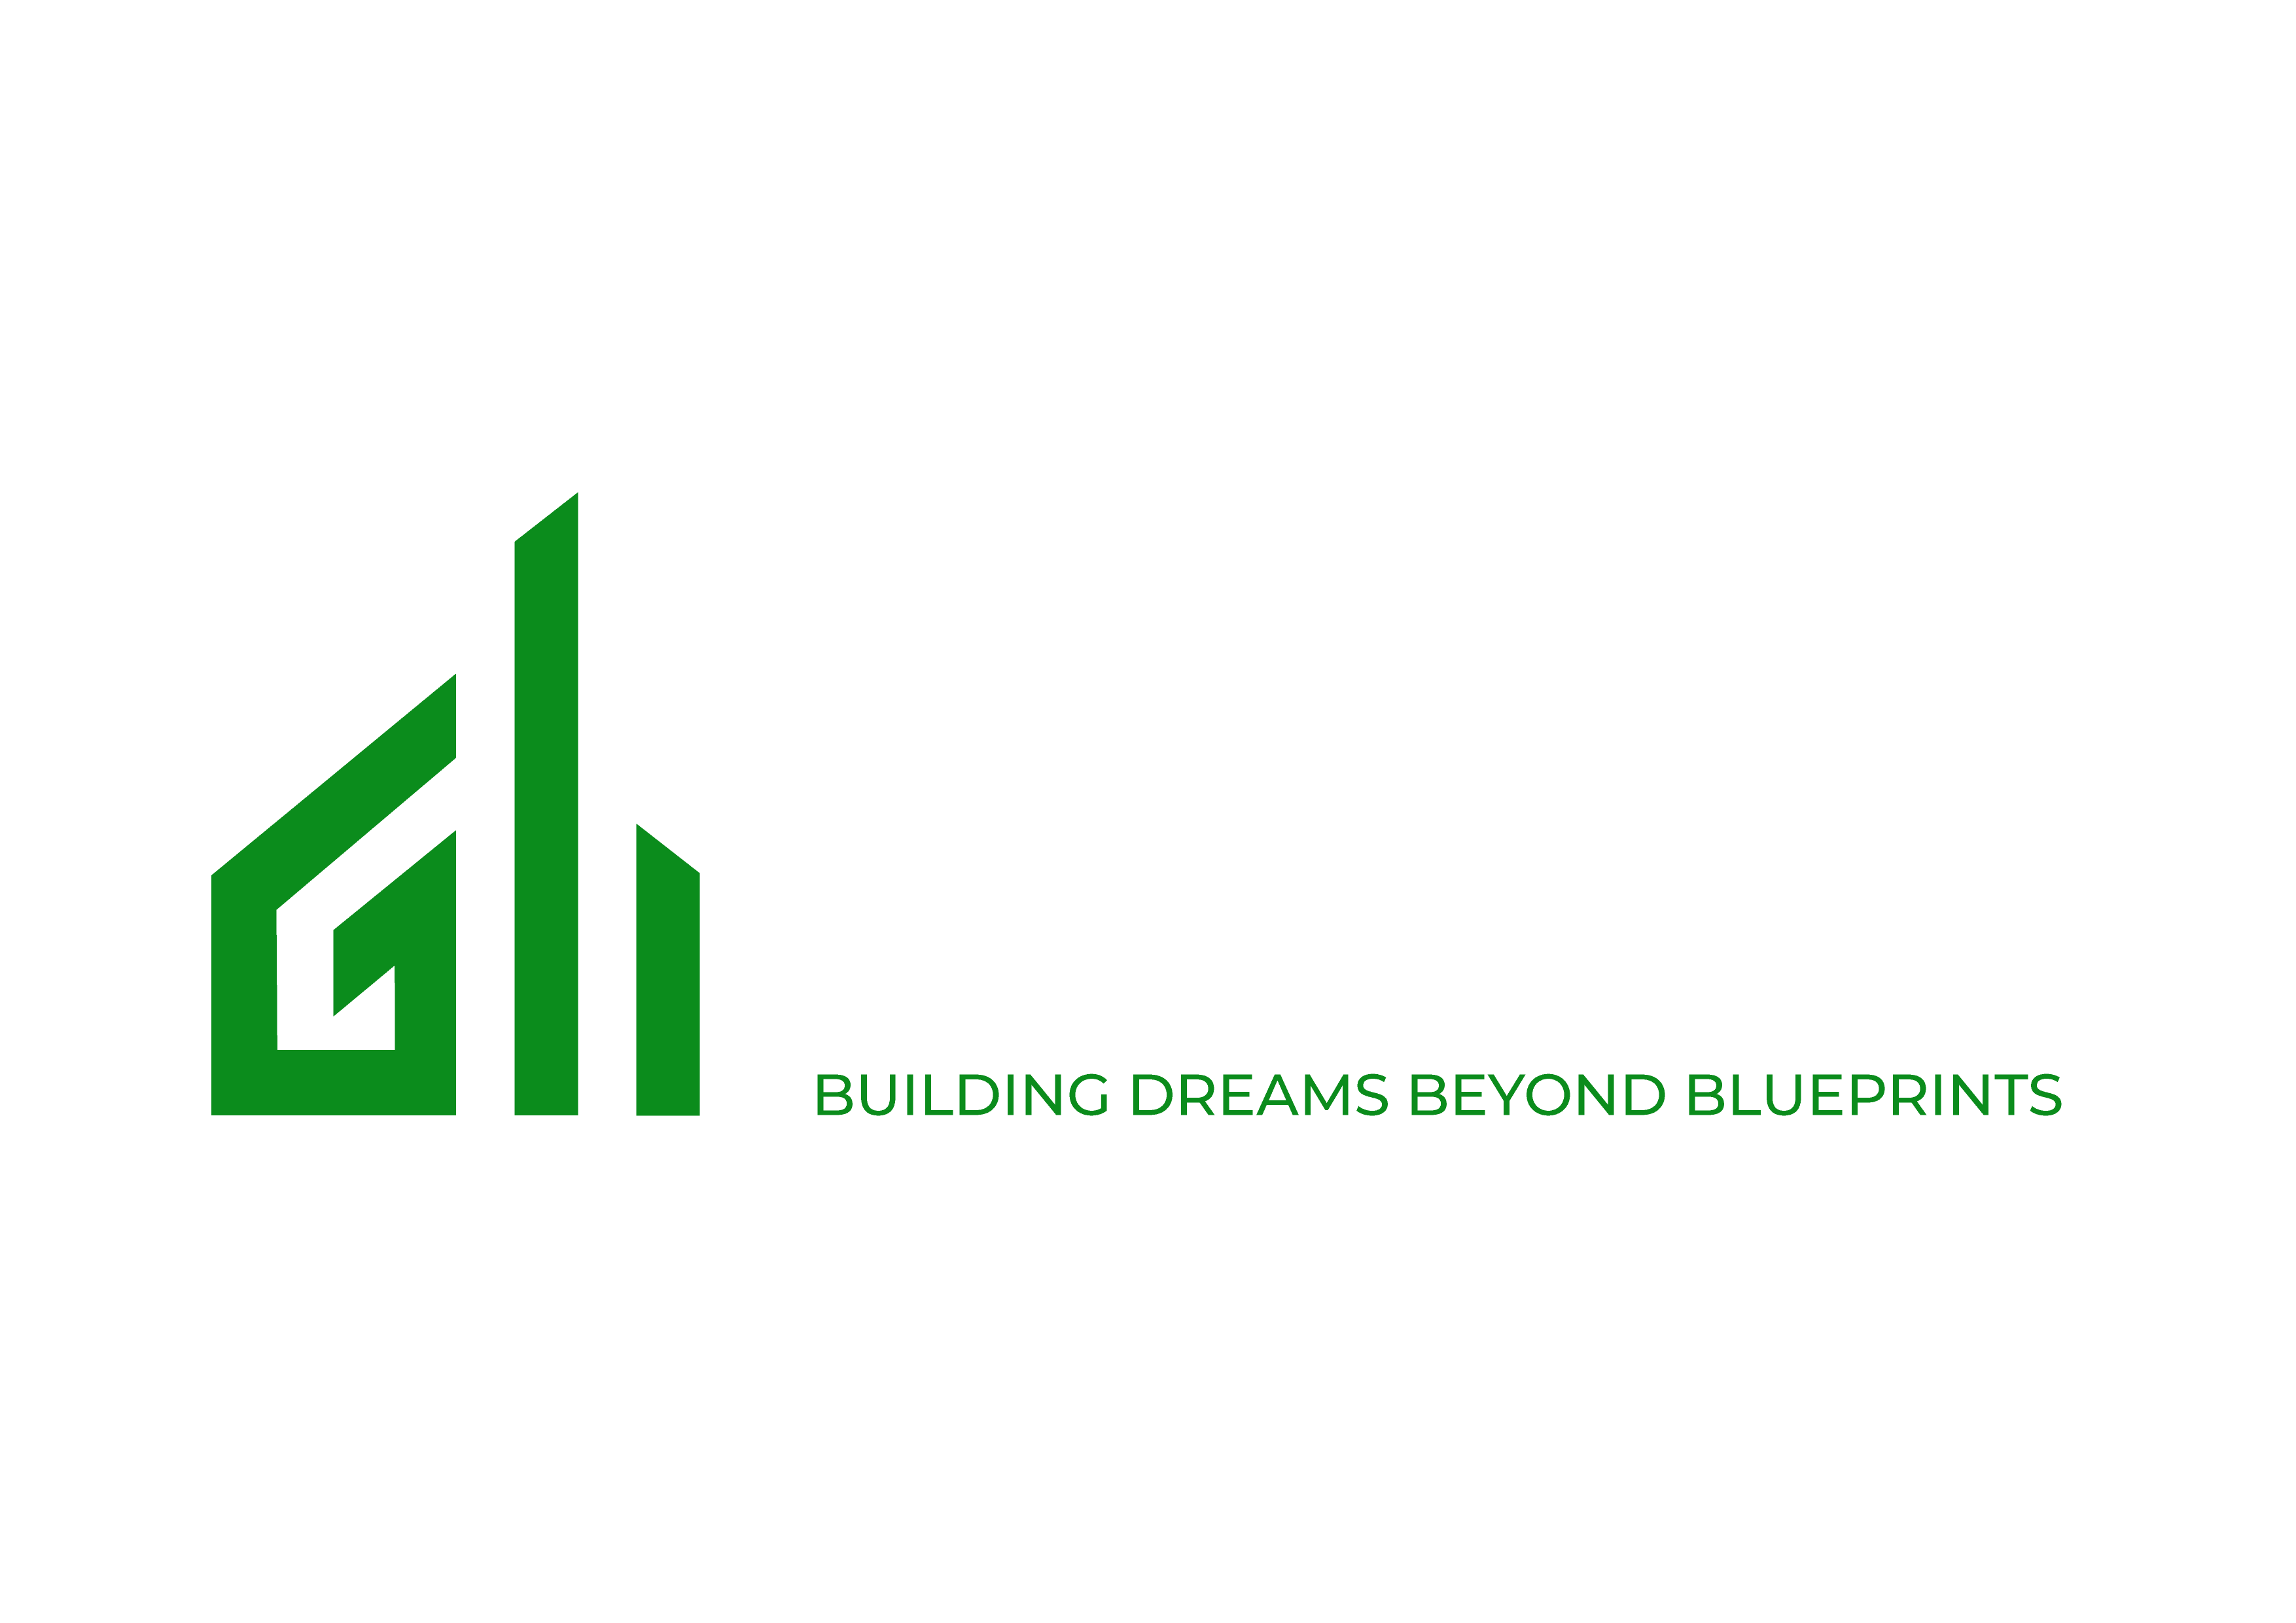 Green Builders & Contractors